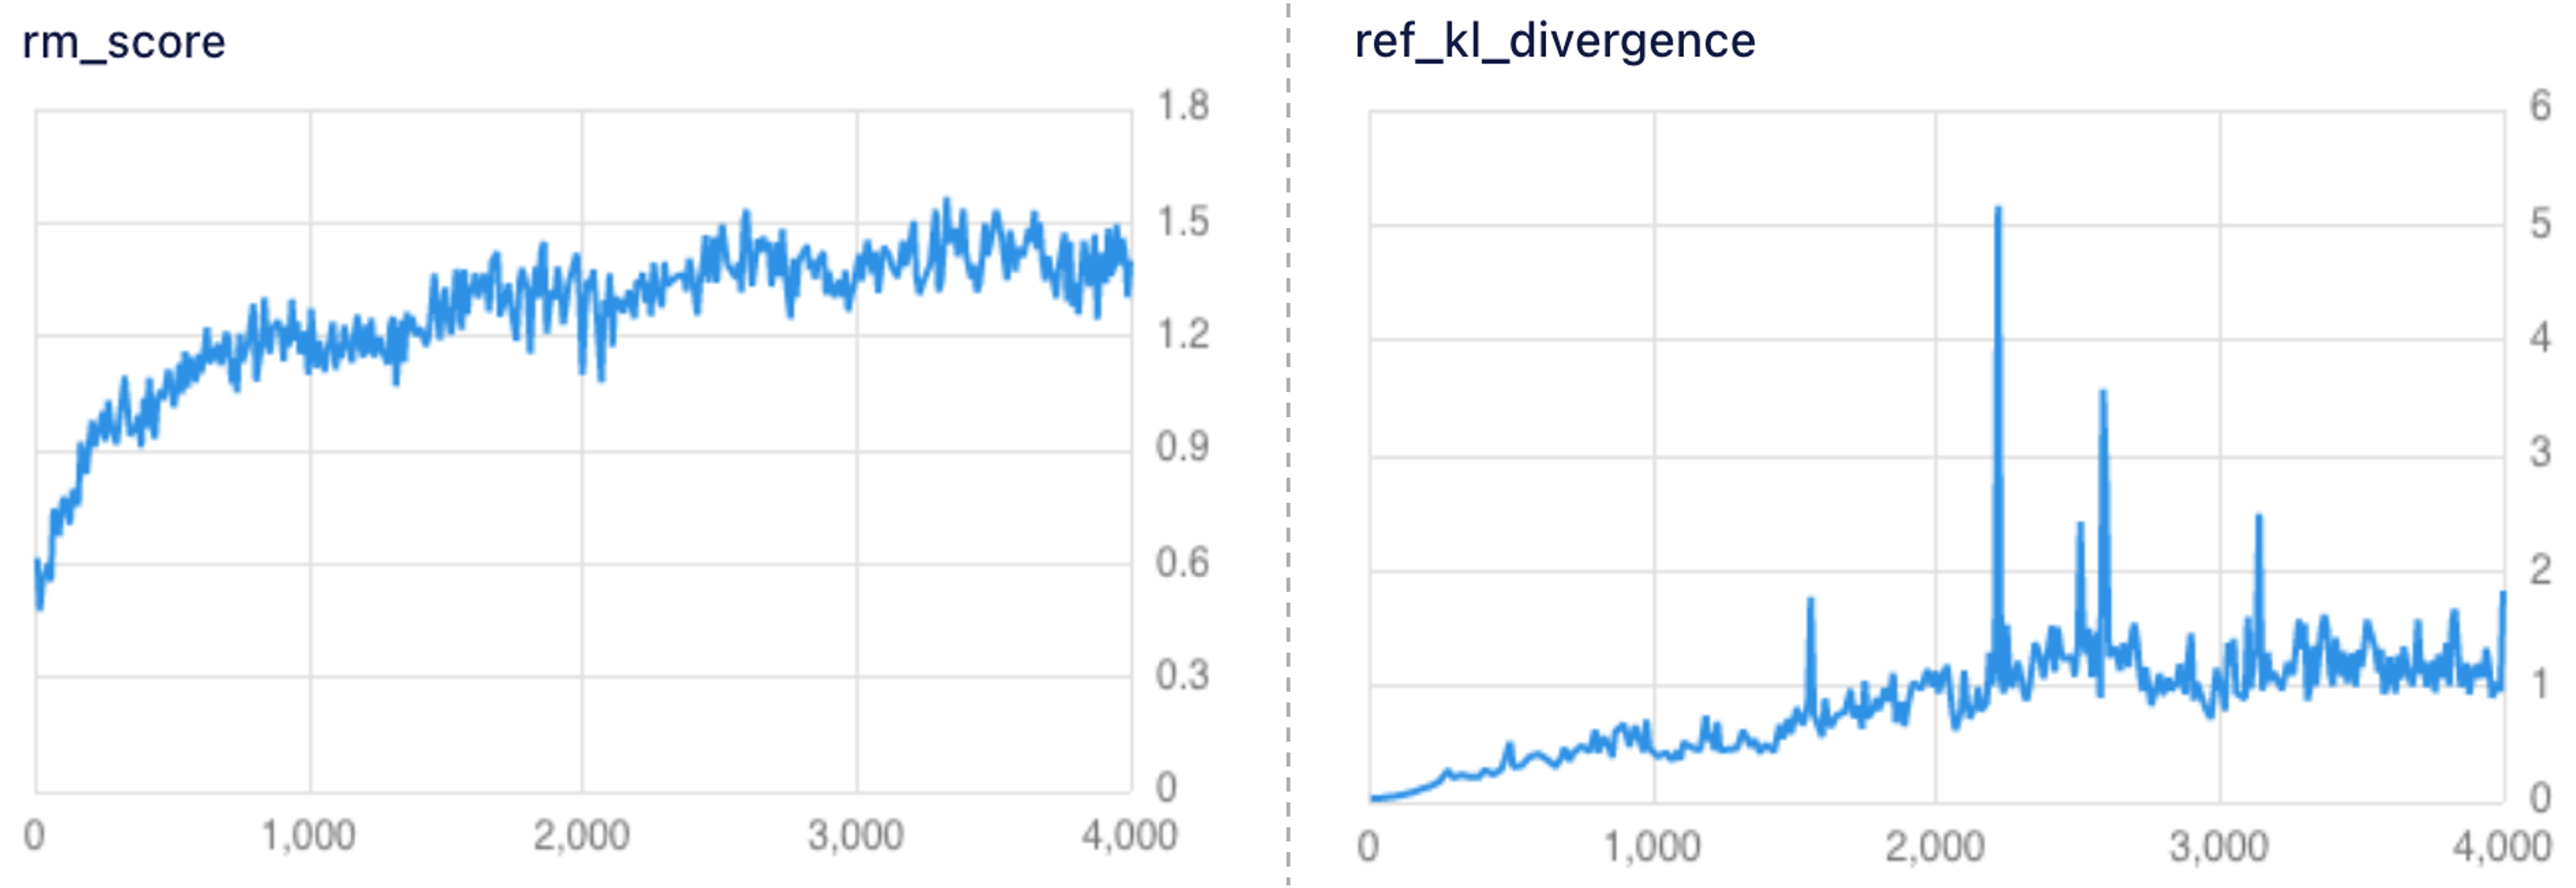 루다가 생성한 답변에 대한 리워드 점수와 레퍼런스 모델과의 KL Divergence